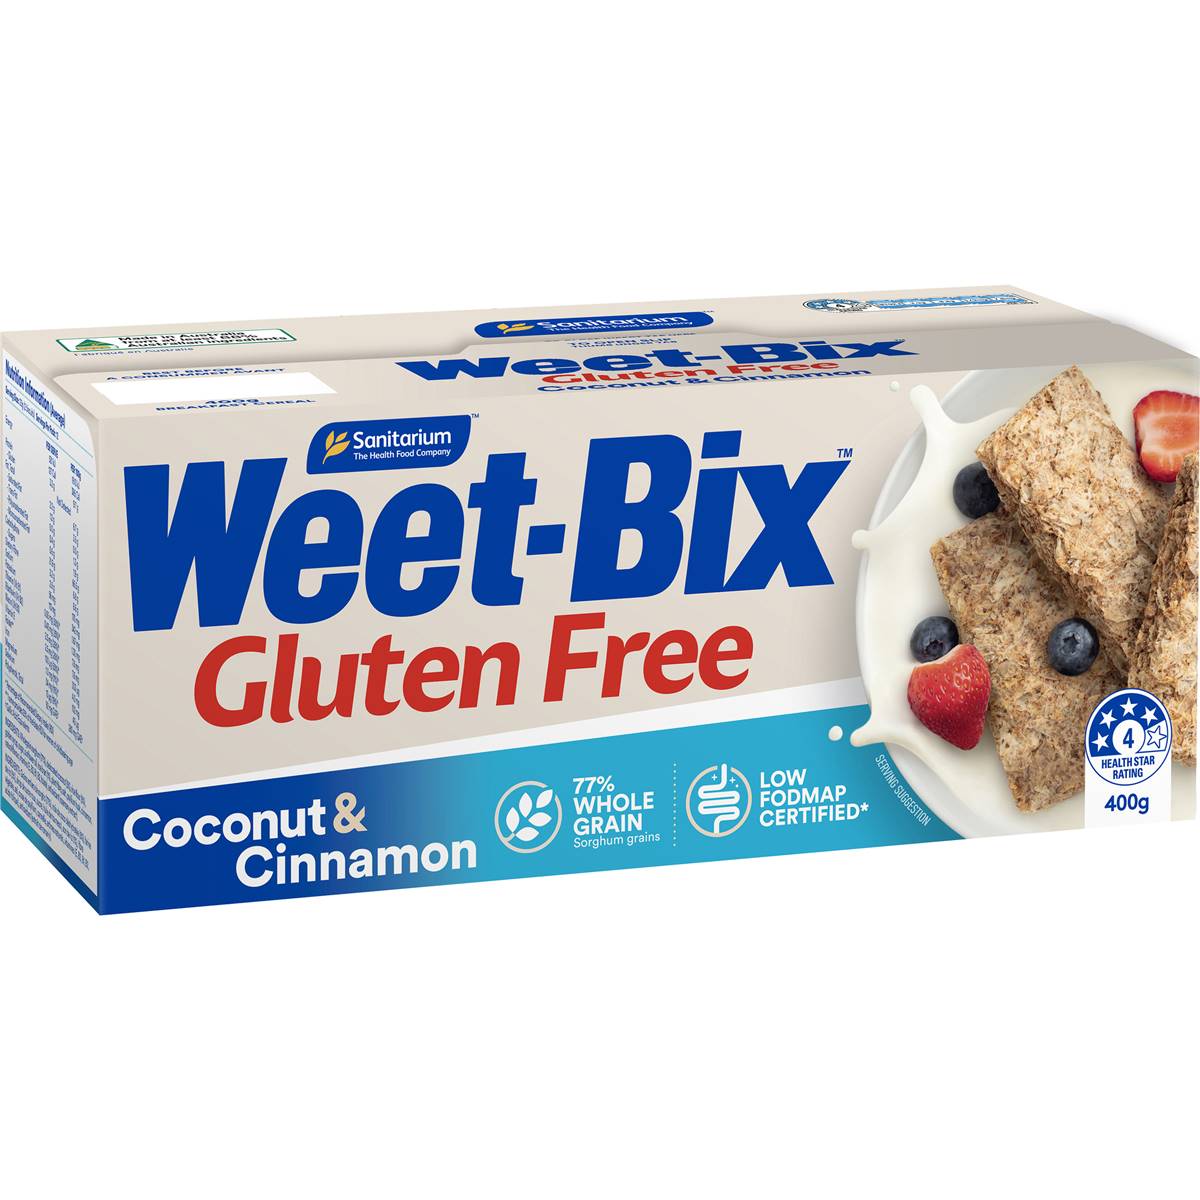 Calories in Sanitarium Weet-bix Gluten Free Coconut & Cinnamon Breakfast Cereal